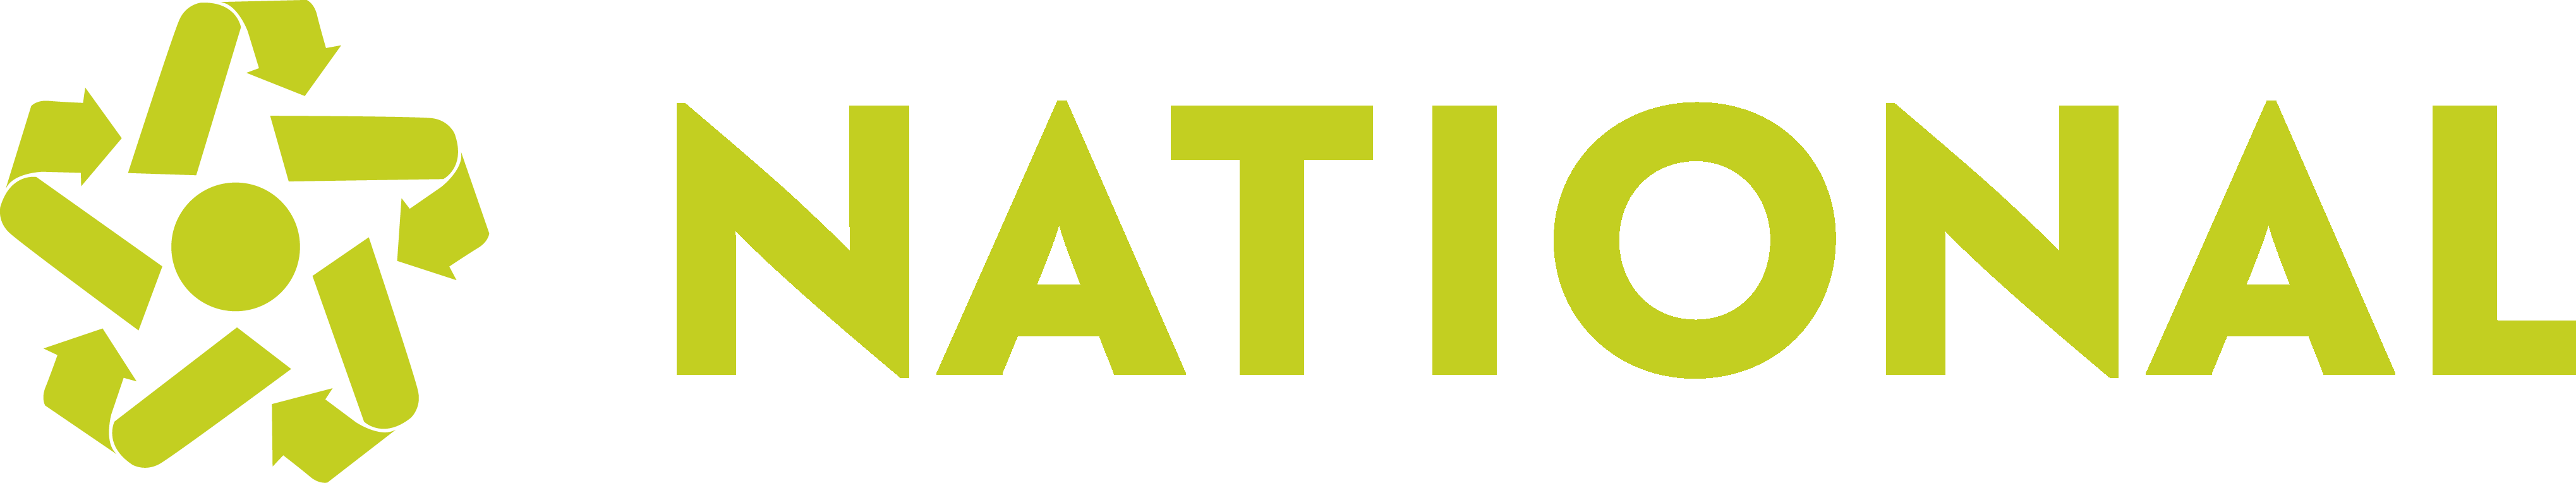 National logo spot all green